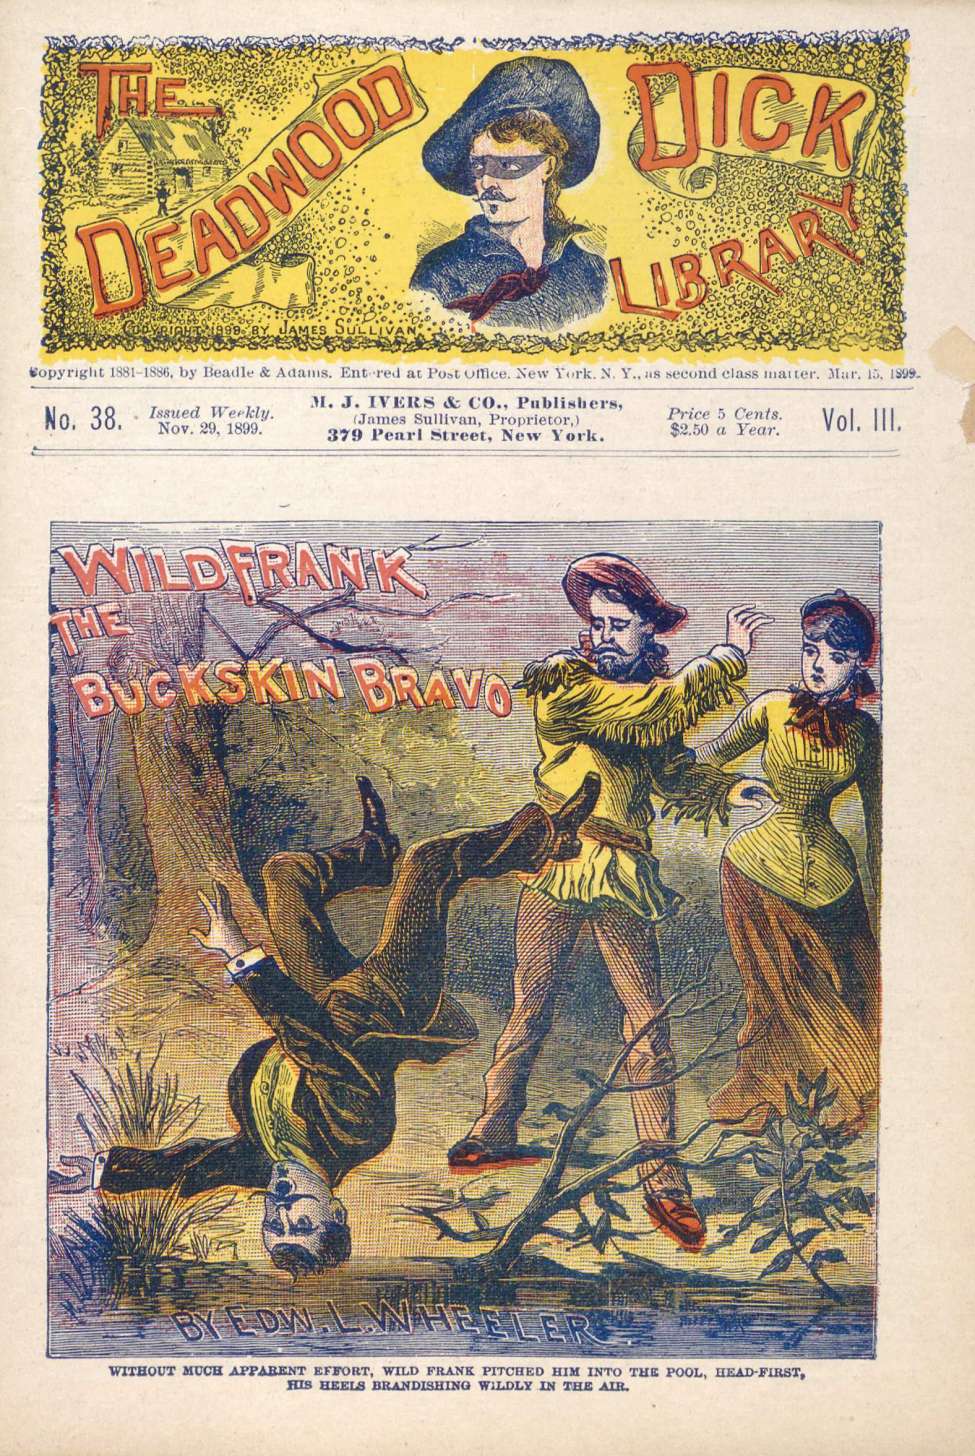 Book Cover For Deadwood Dick Library v2 38 - Wild Frank, the Buckskin Bravo